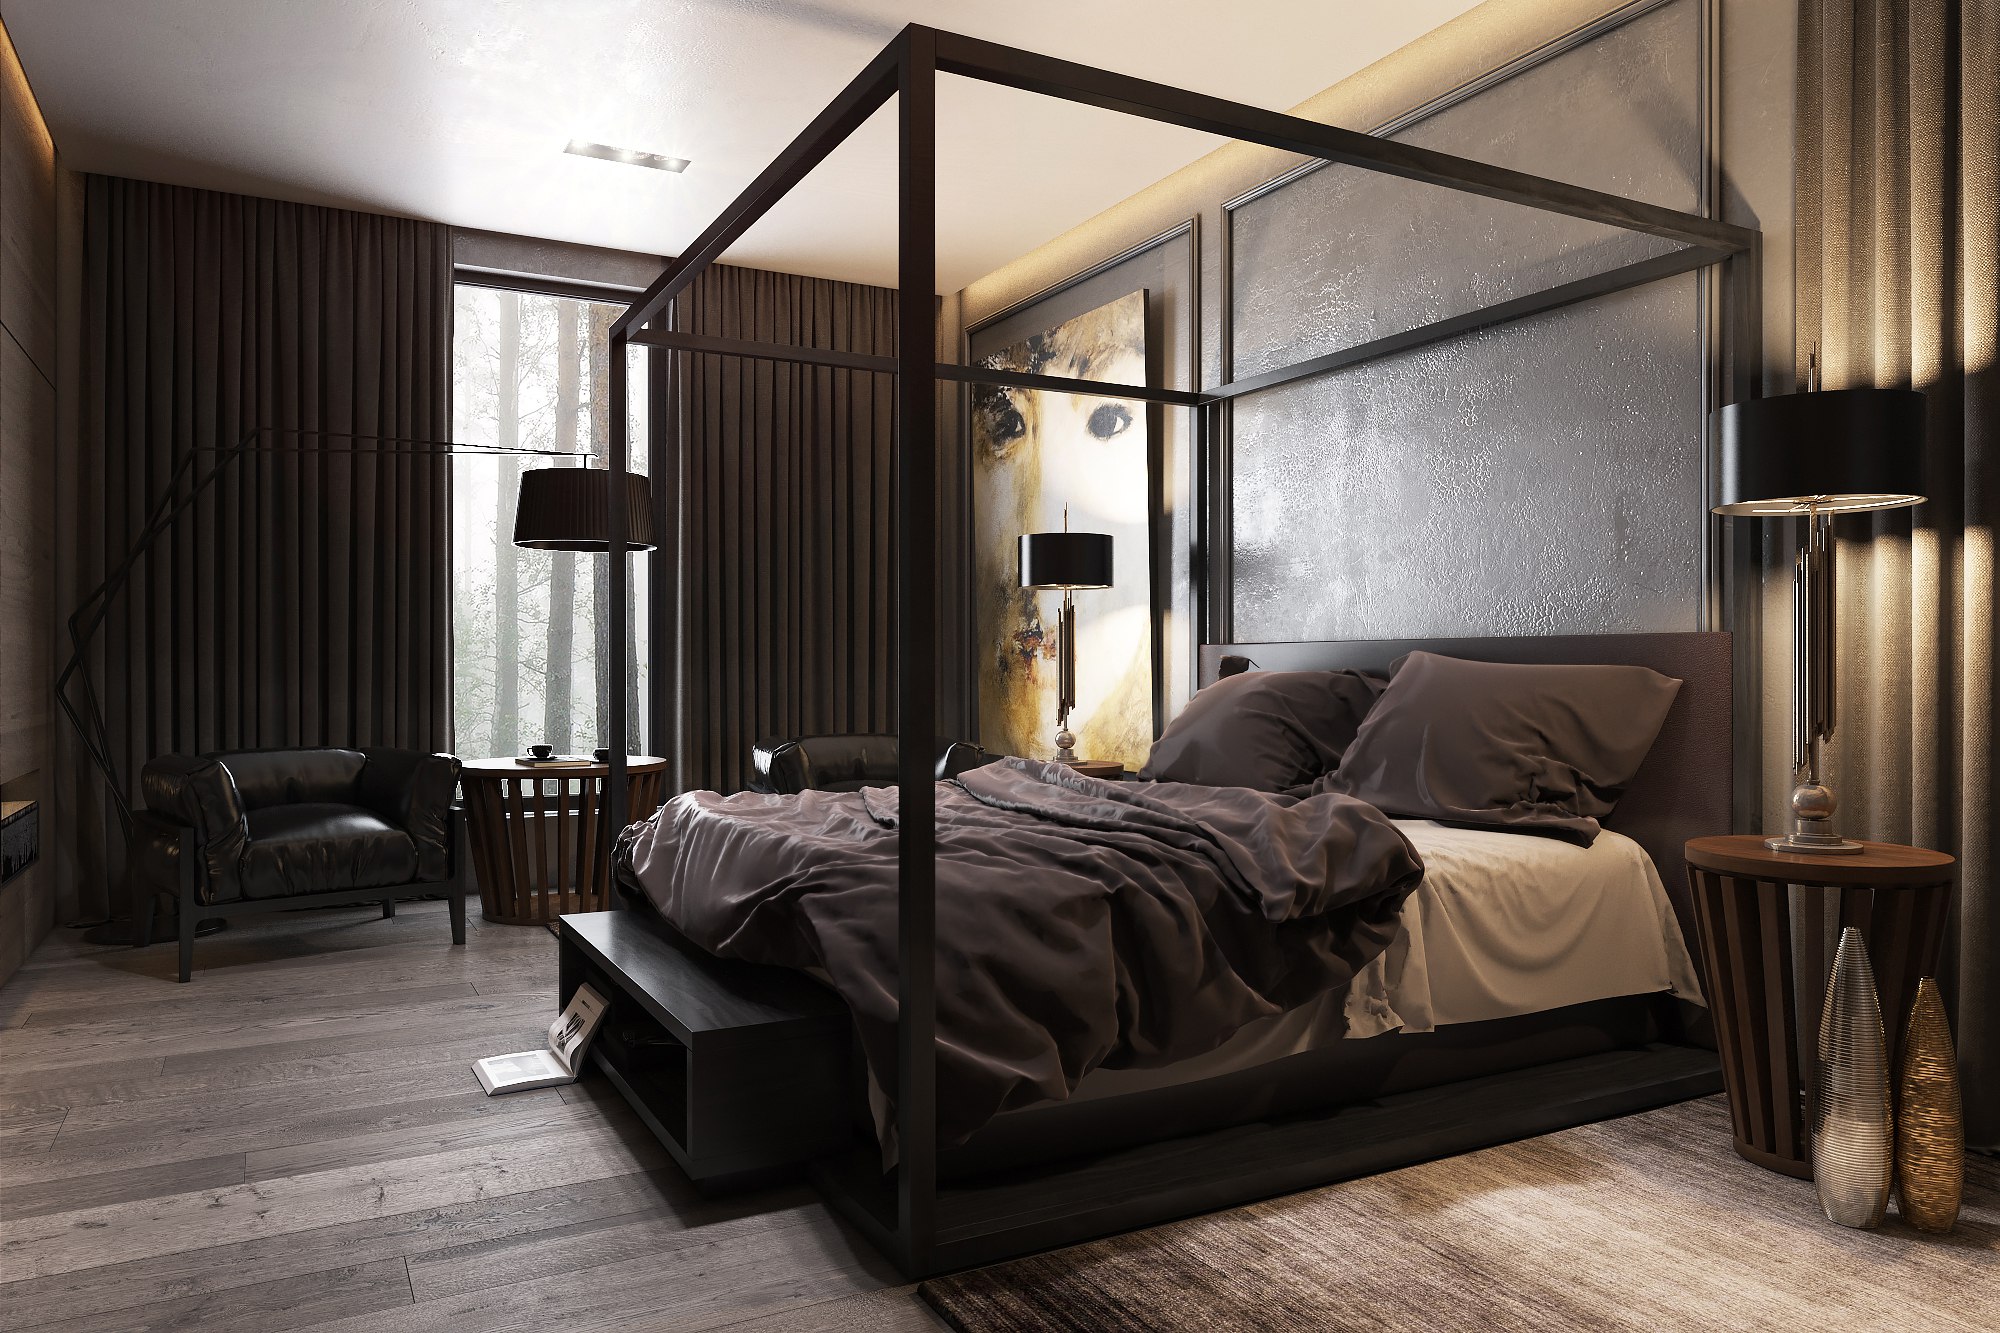 Спальня в загородном доме - Работа из галереи 3D Моделей